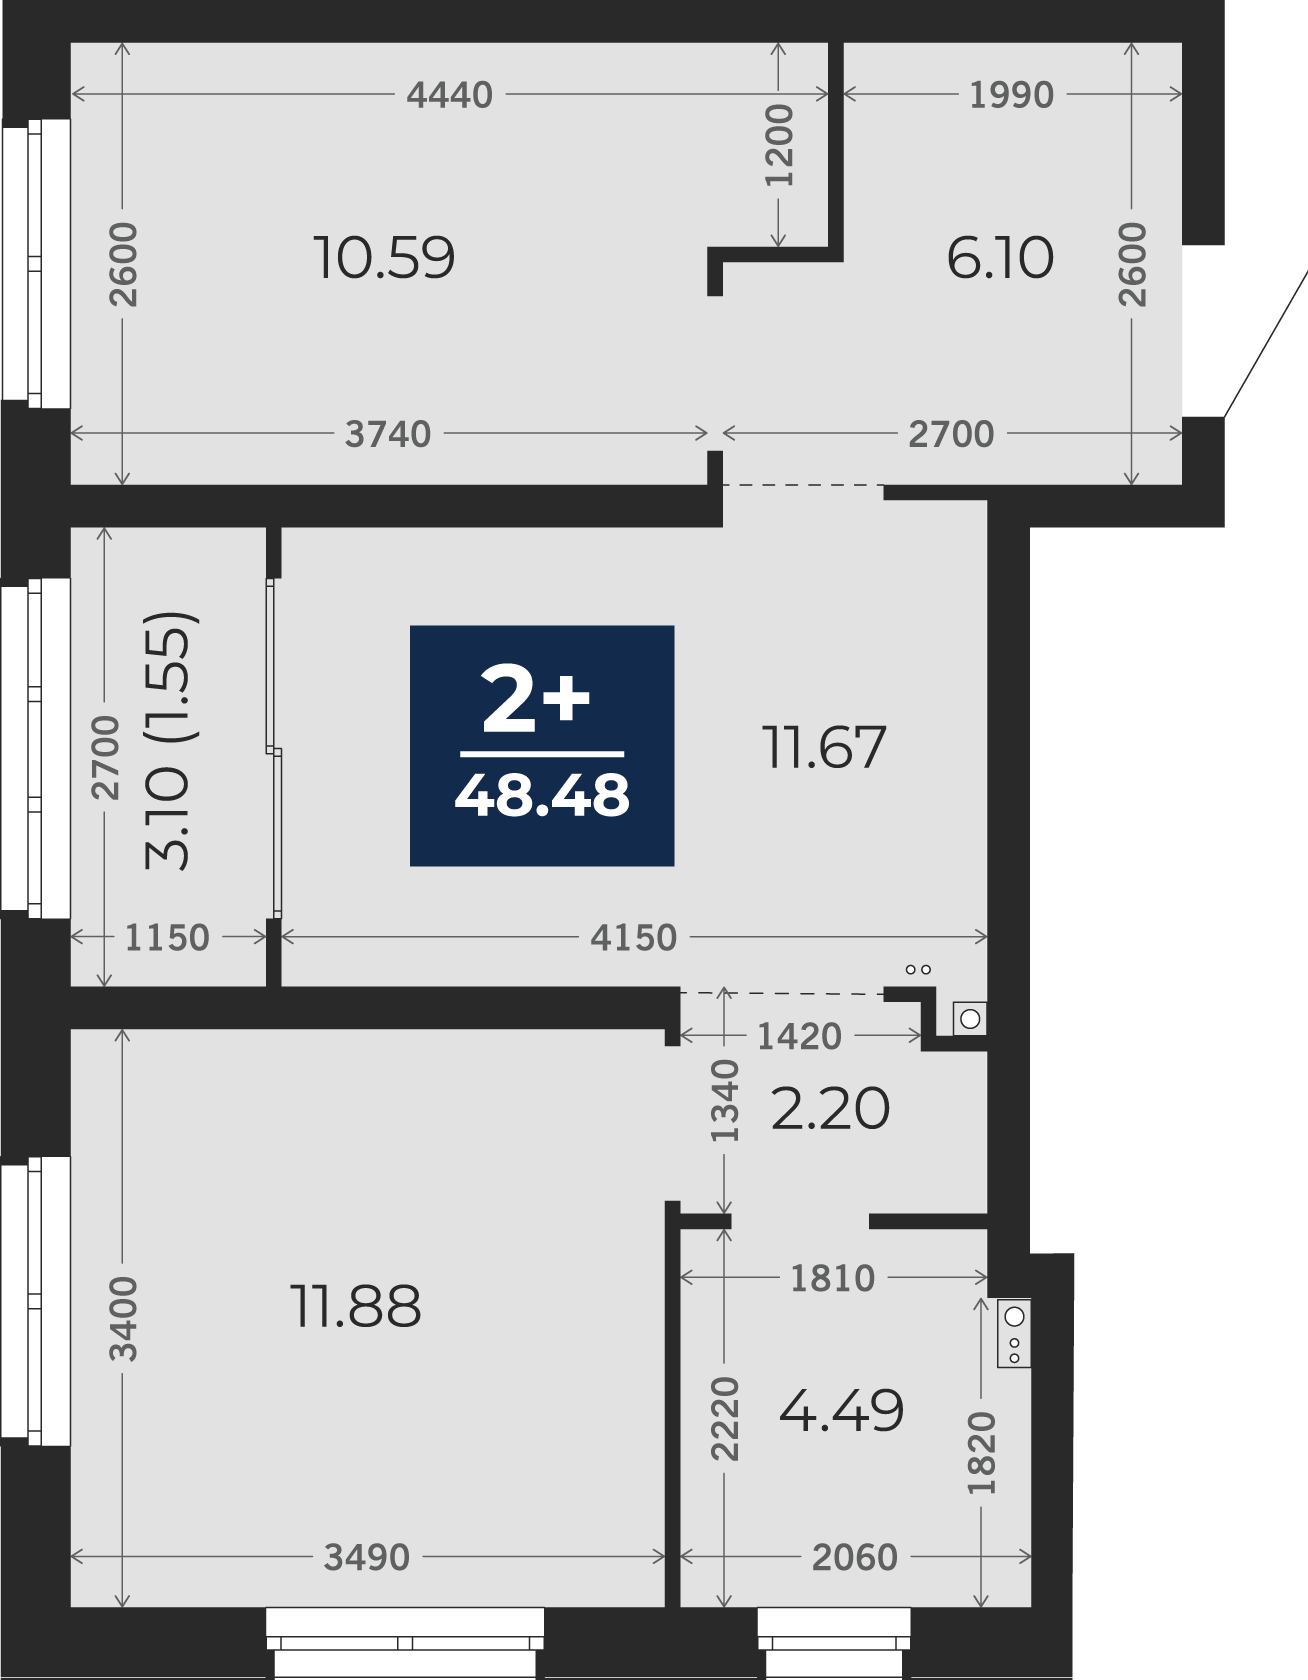 Квартира № 46, 2-комнатная, 48.48 кв. м, 3 этаж